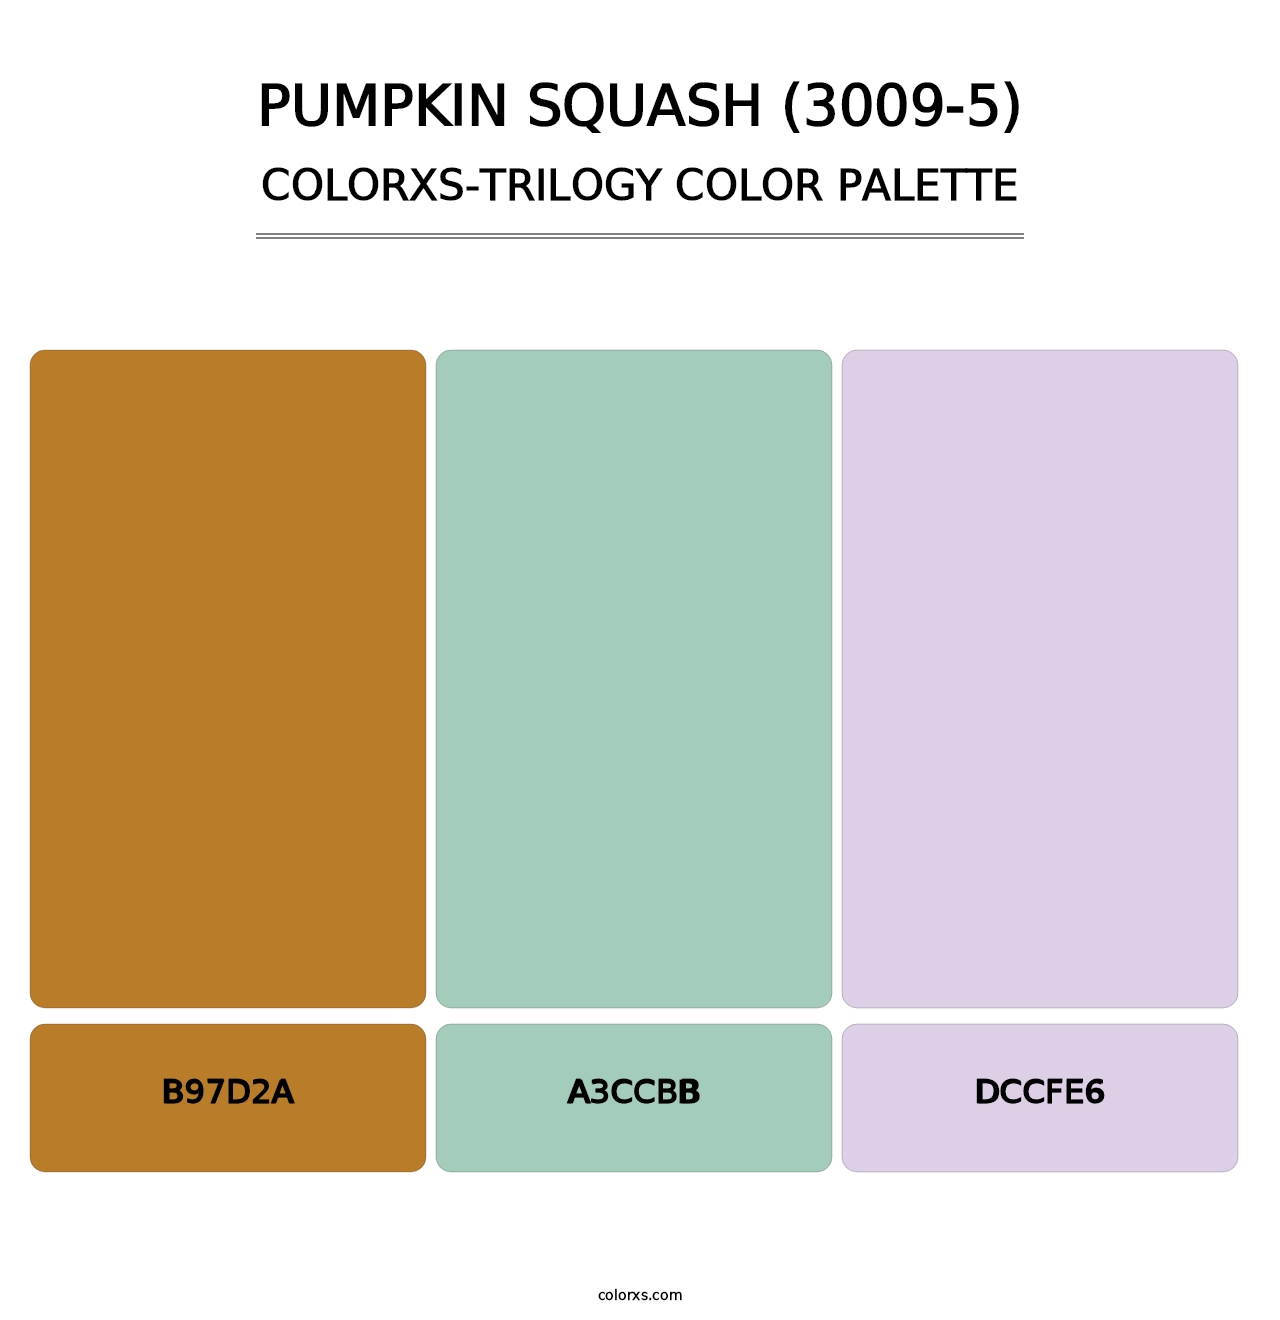 Pumpkin Squash (3009-5) - Colorxs Trilogy Palette